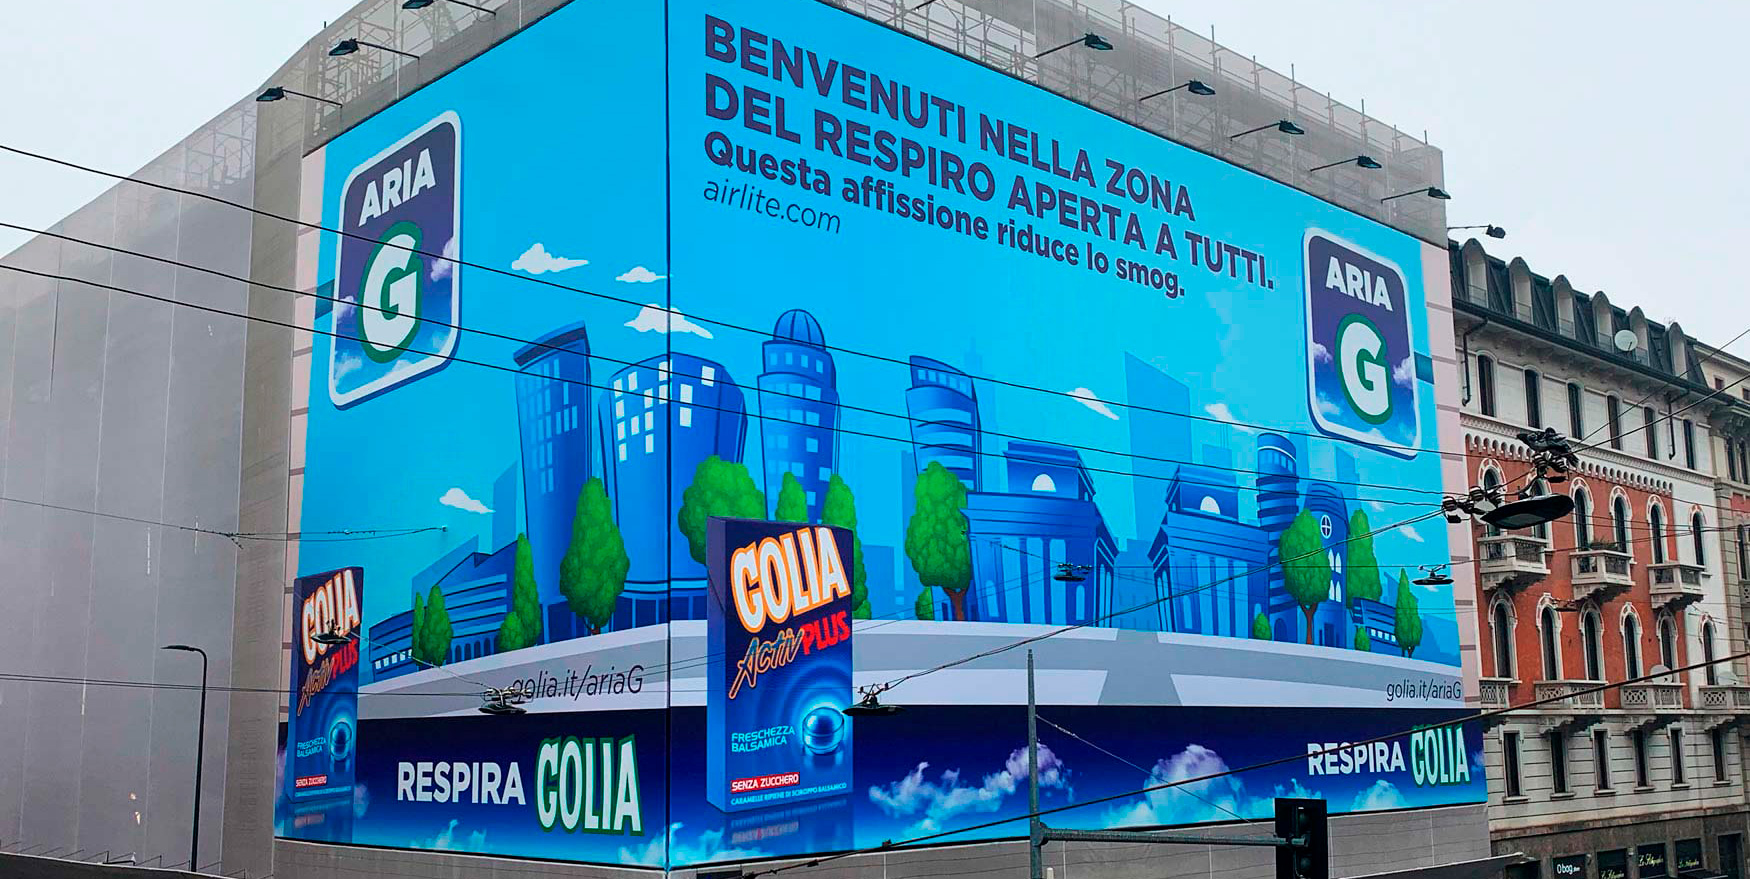 Golia Aria G - Corso di Porta Venezia Milano